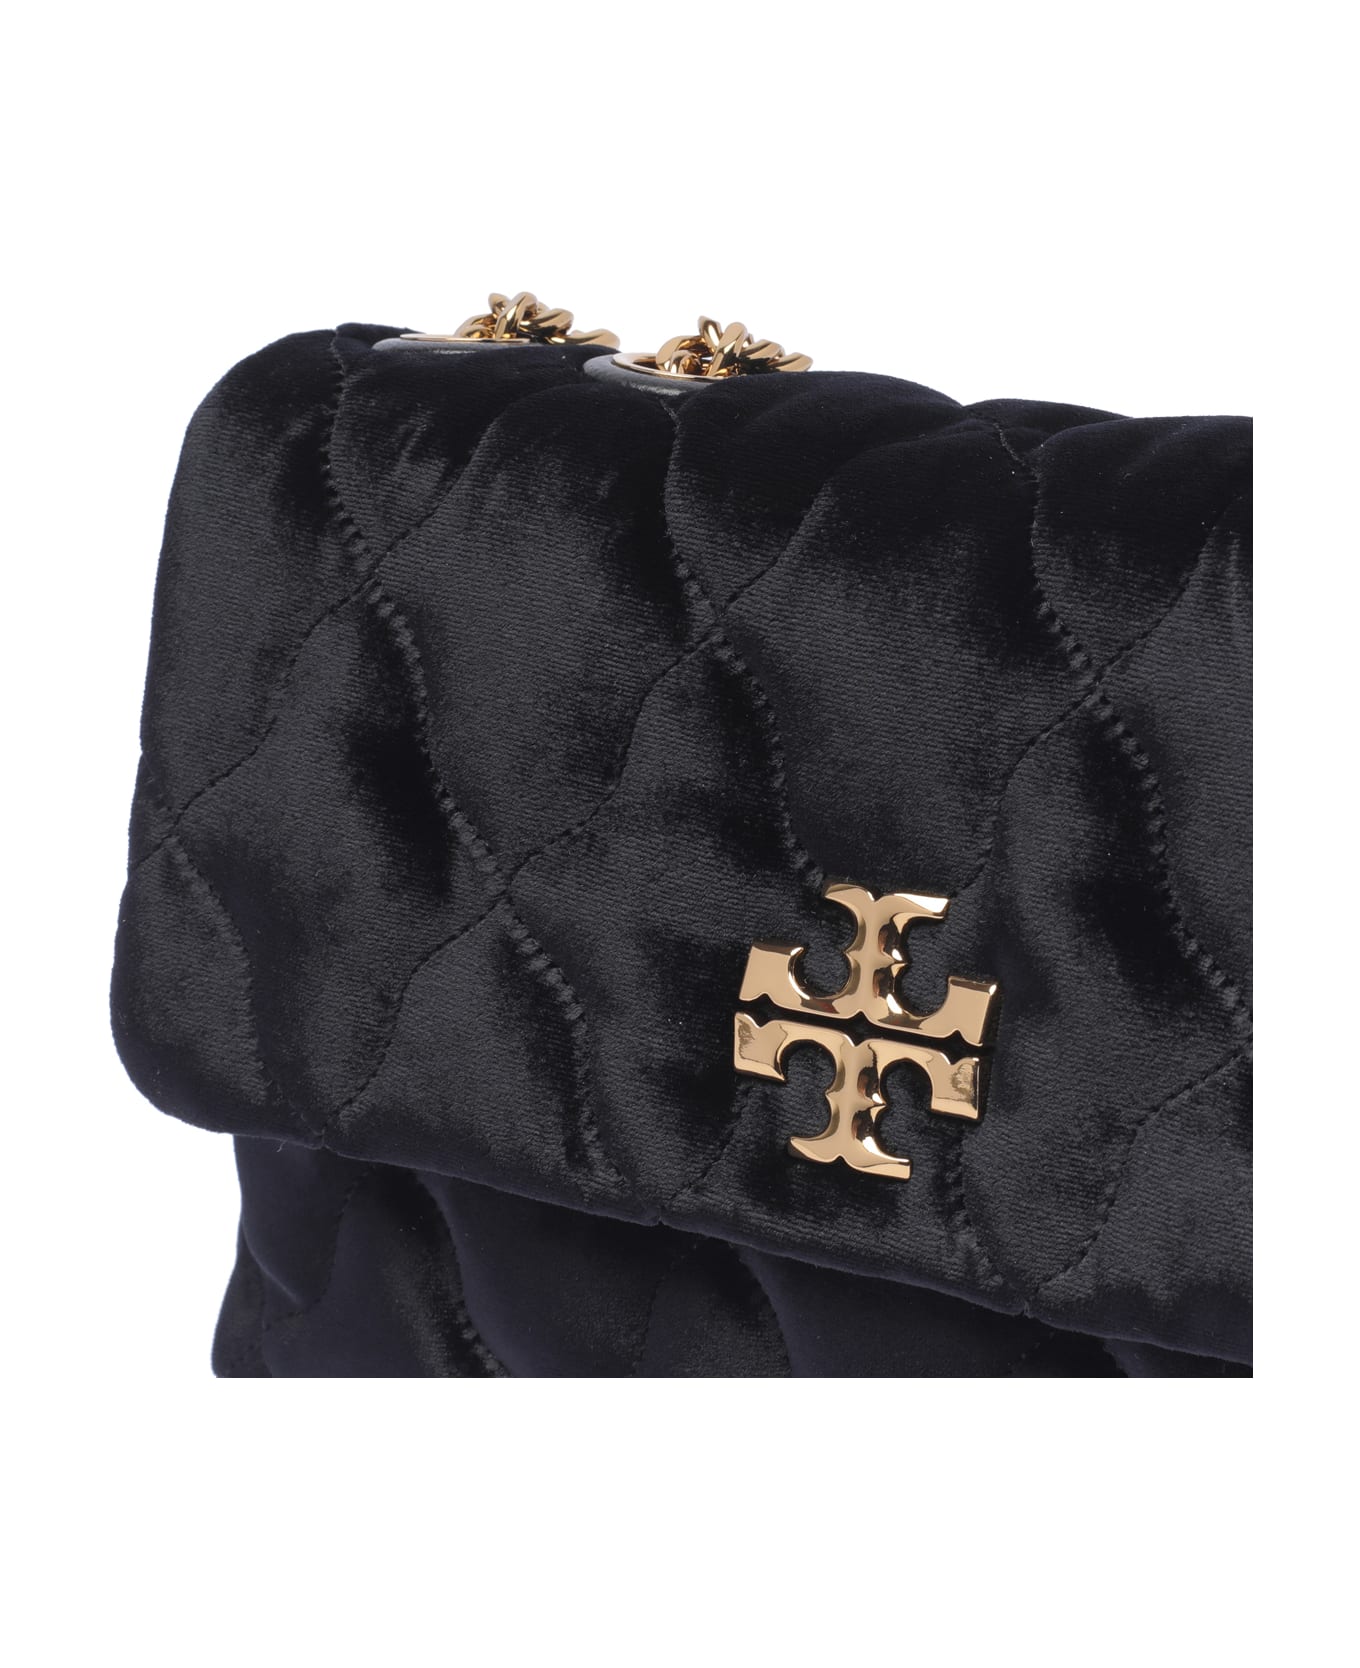 Tory Burch Kira Velvet Small Convertible Shoulder Bag - Black